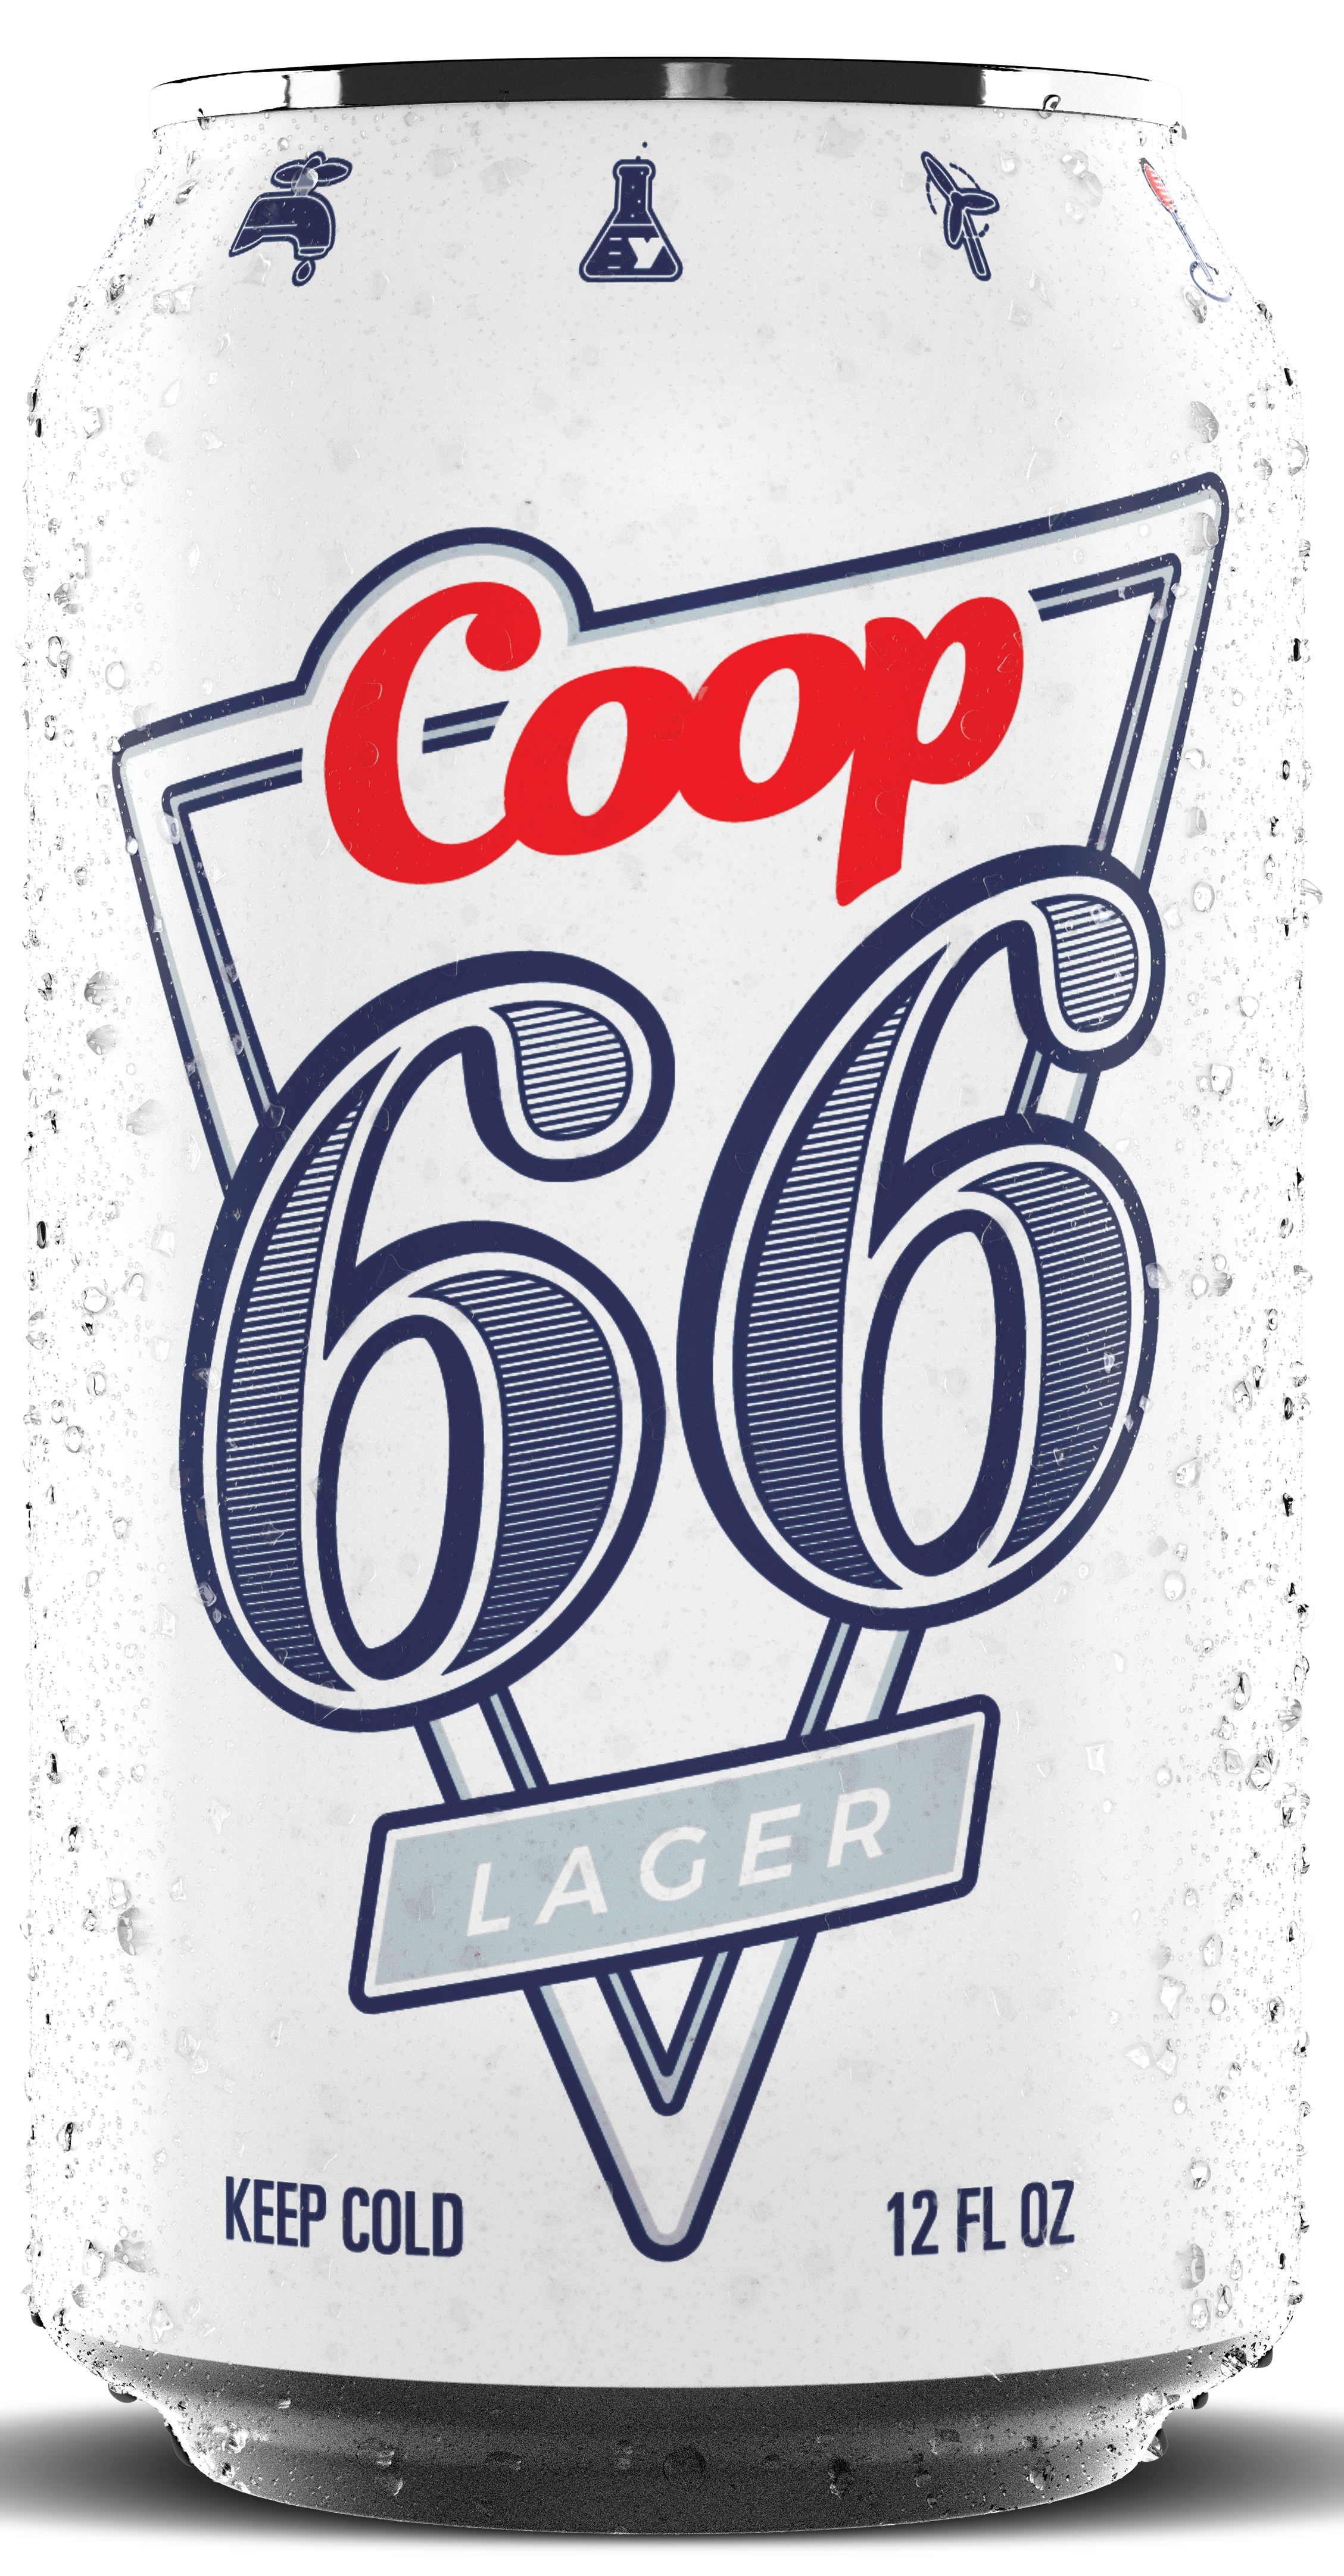 COOP 66